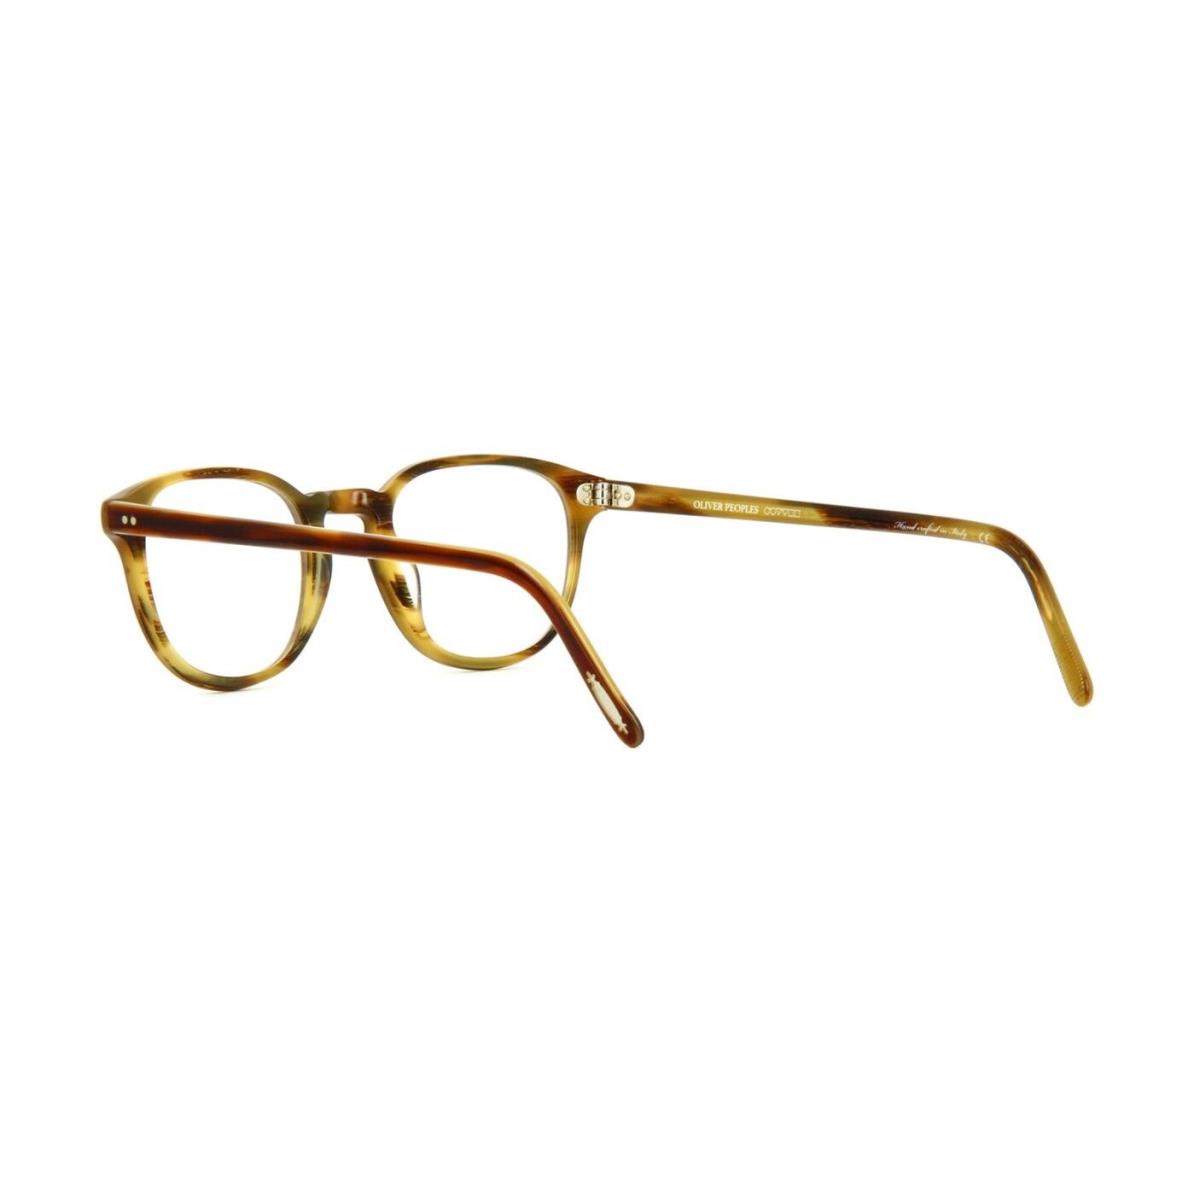 Oliver Peoples eyeglasses  - Amaretto Tortoise Frame 1